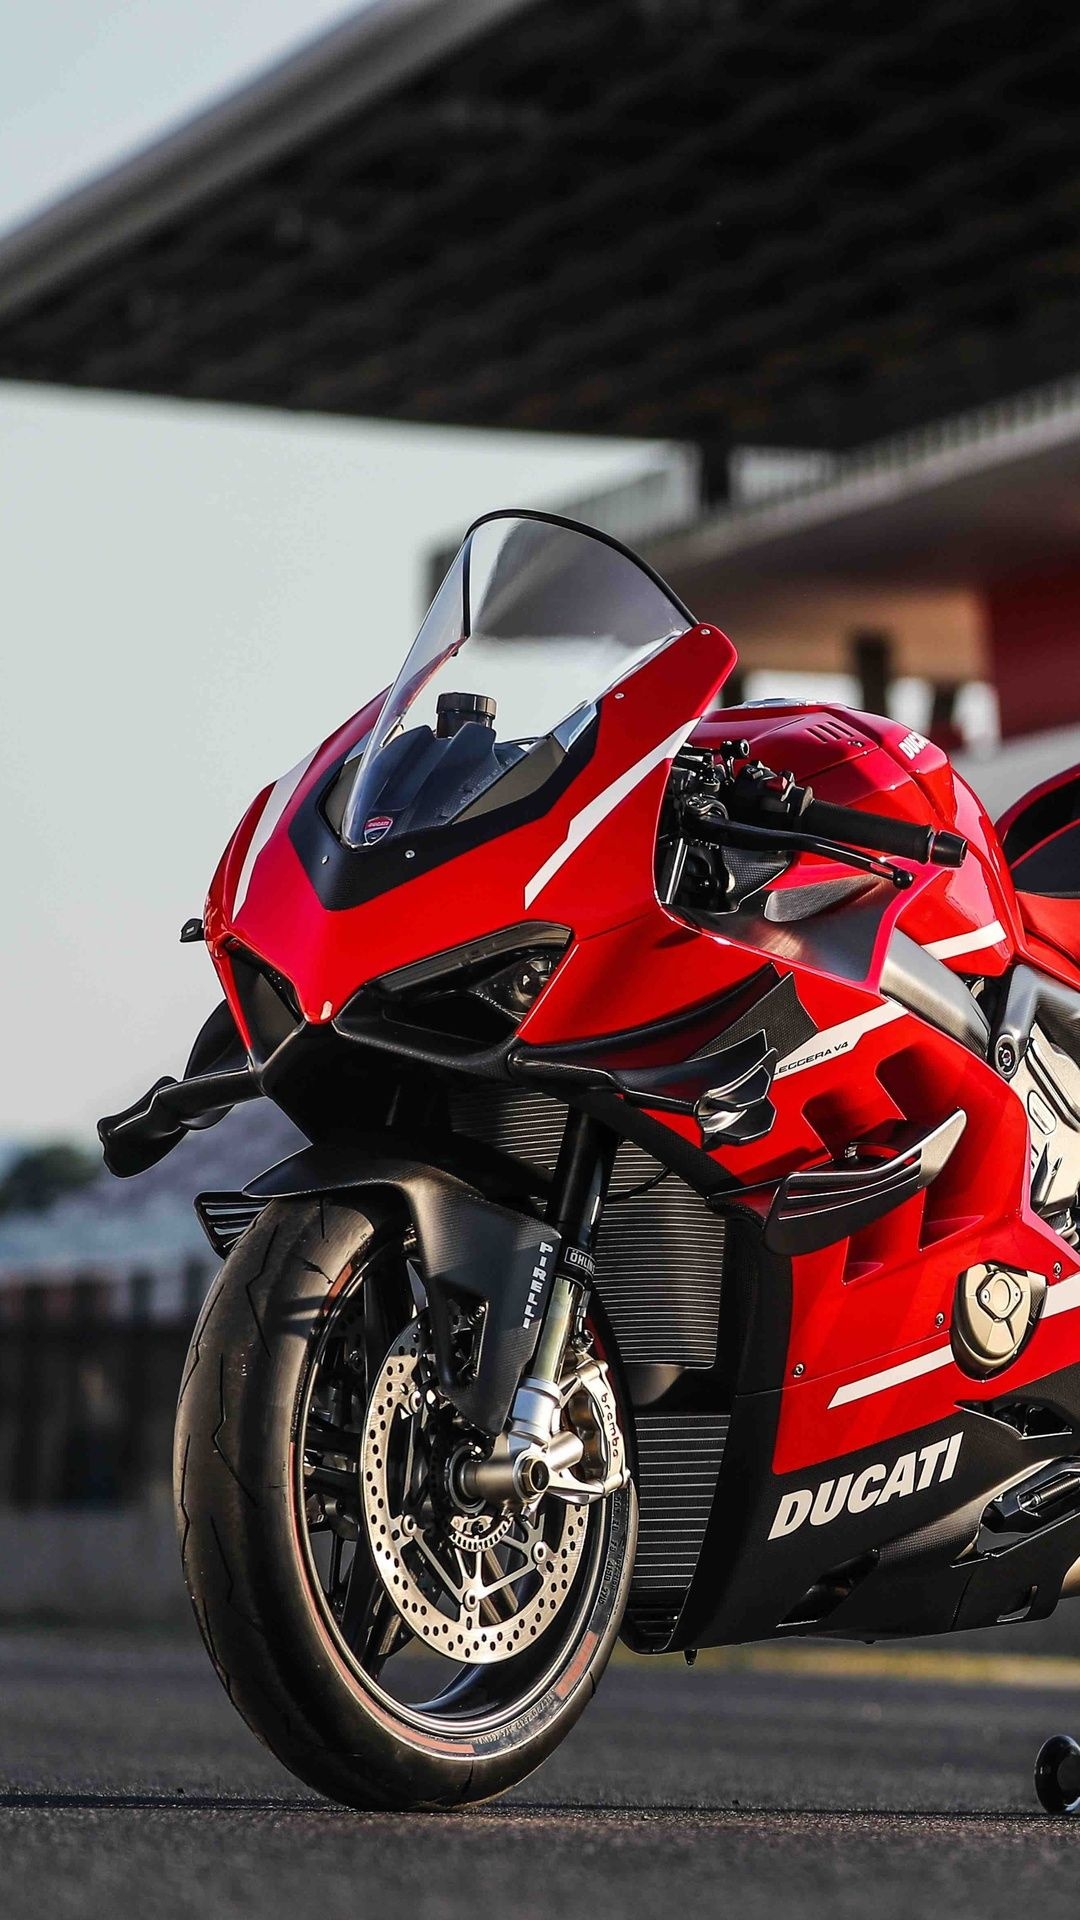 Ducati Superleggera V4, 2020 model, High-resolution wallpaper, Mobile background, 1080x1920 Full HD Handy